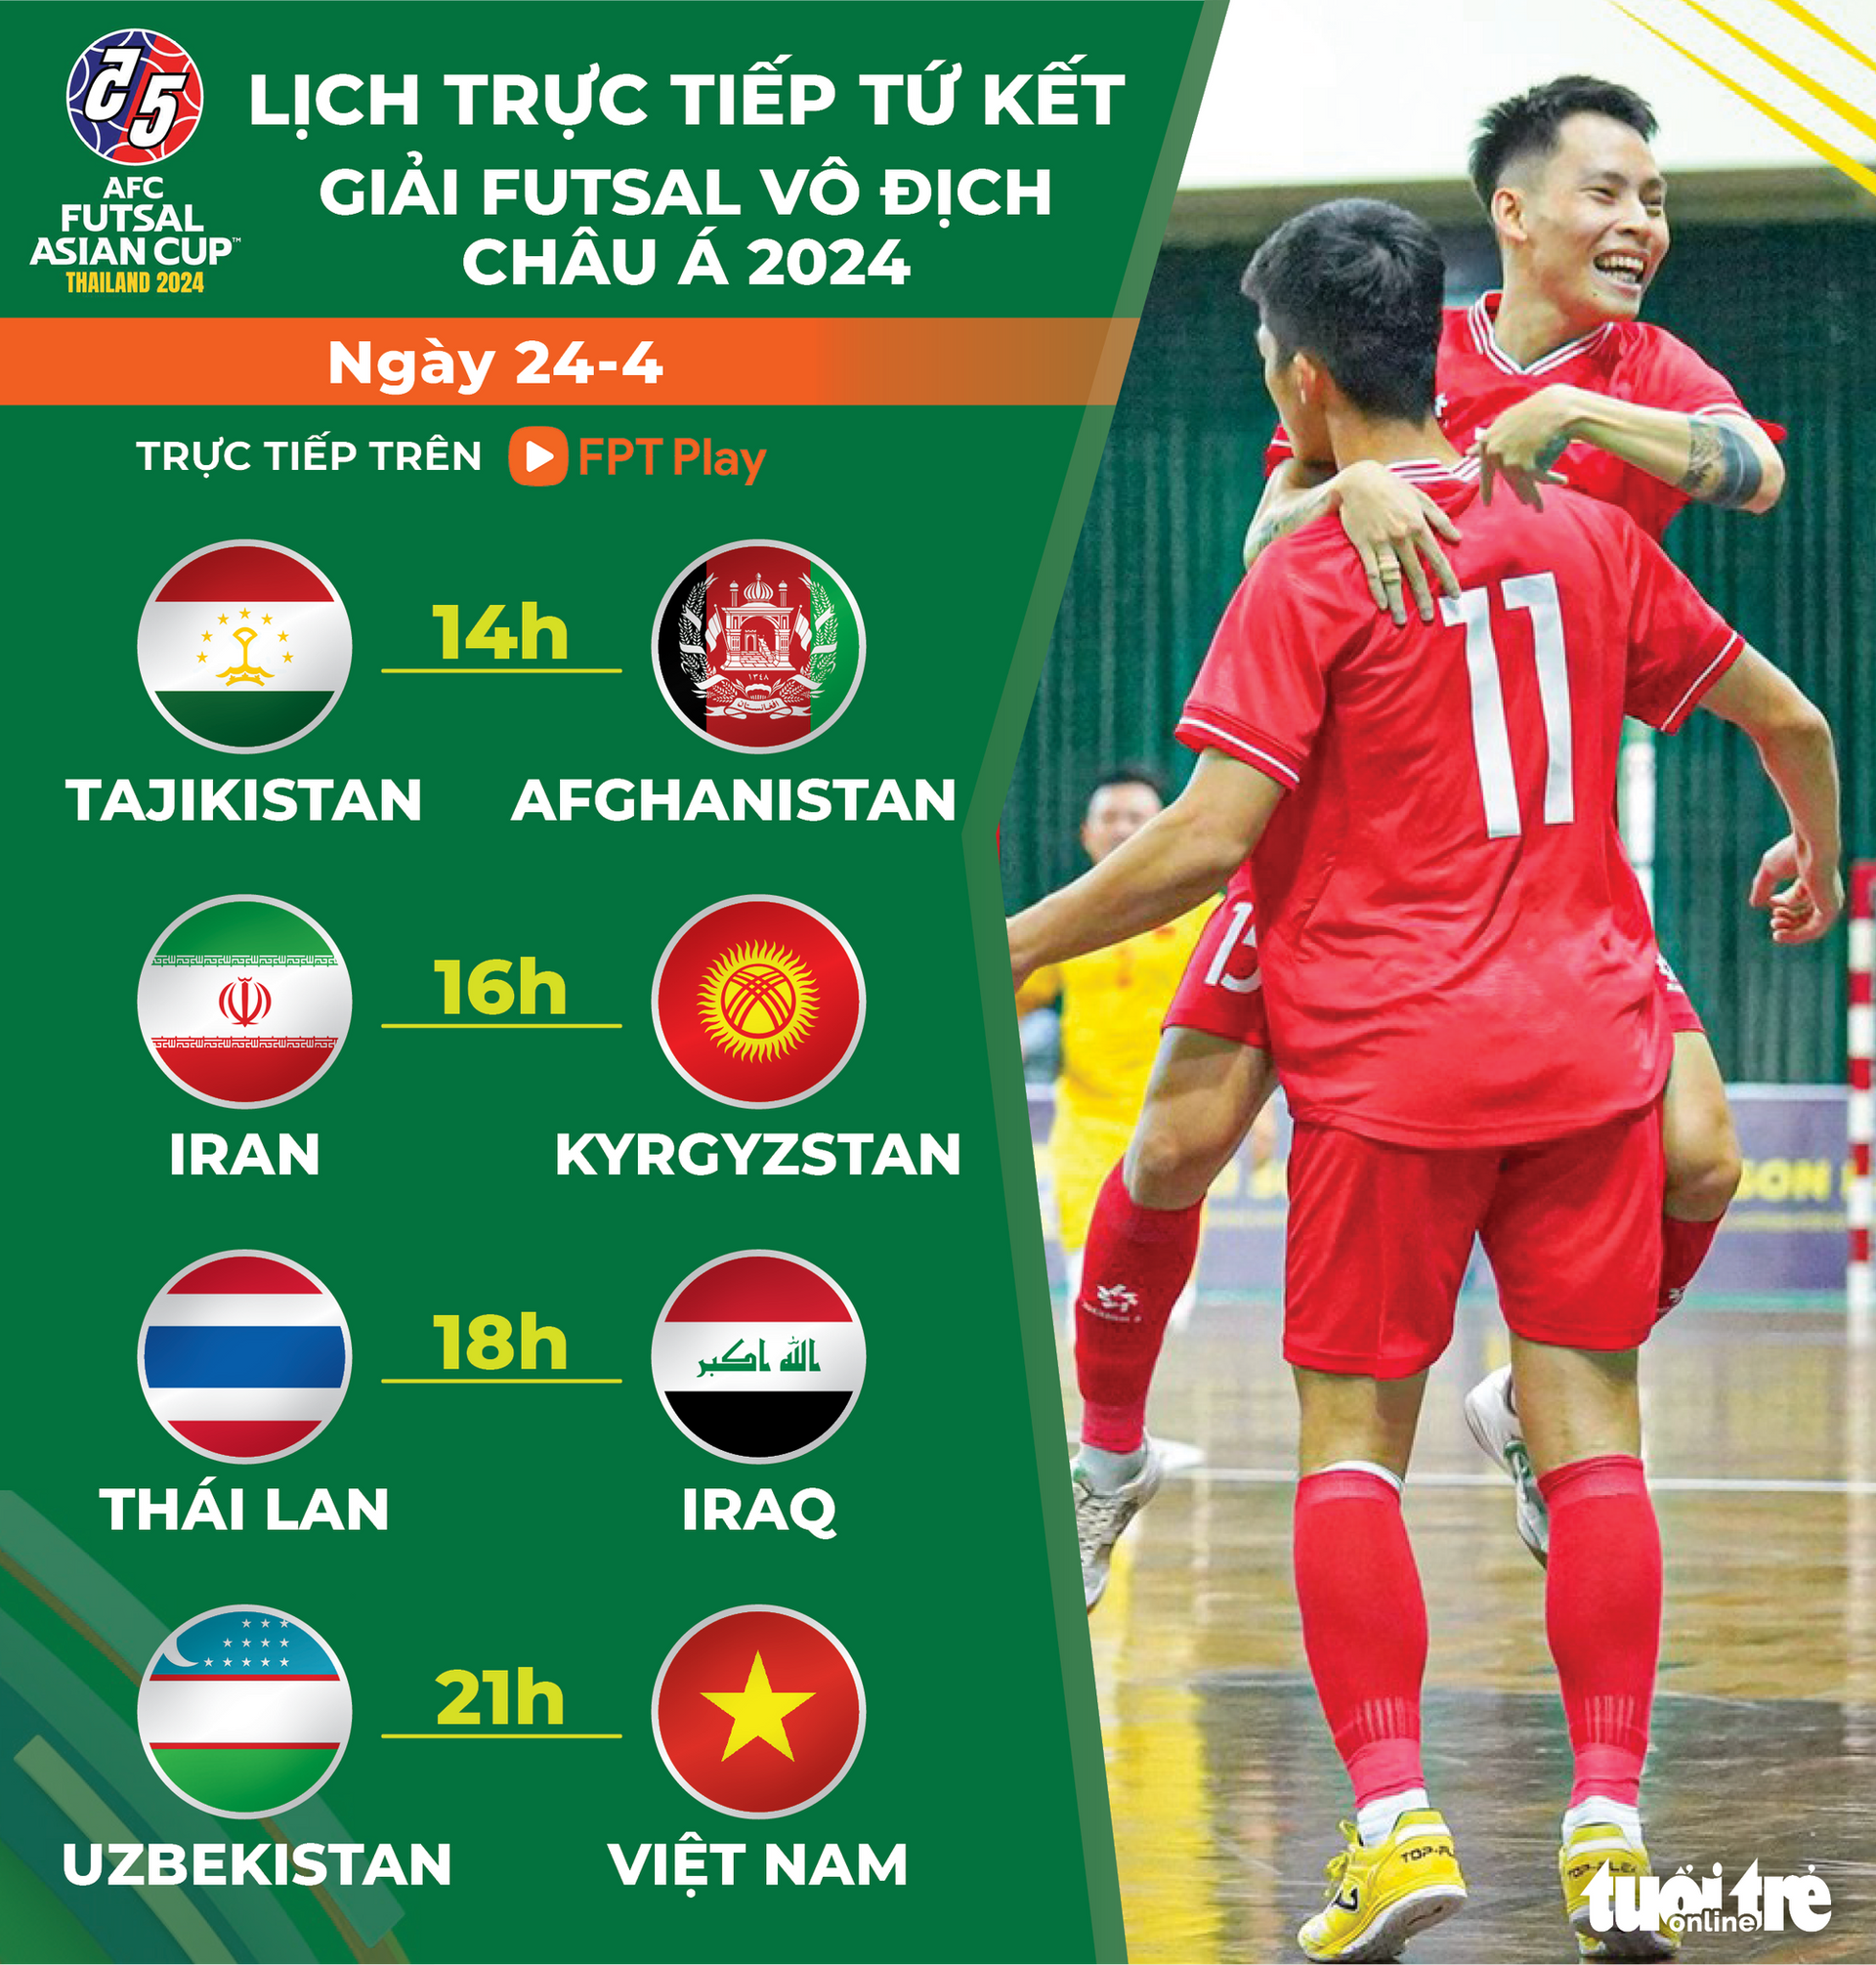 Lịch trực tiếp tứ kết futsal châu Á: Futsal Việt Nam đấu Uzbekistan - Đồ họa: AN BÌNH